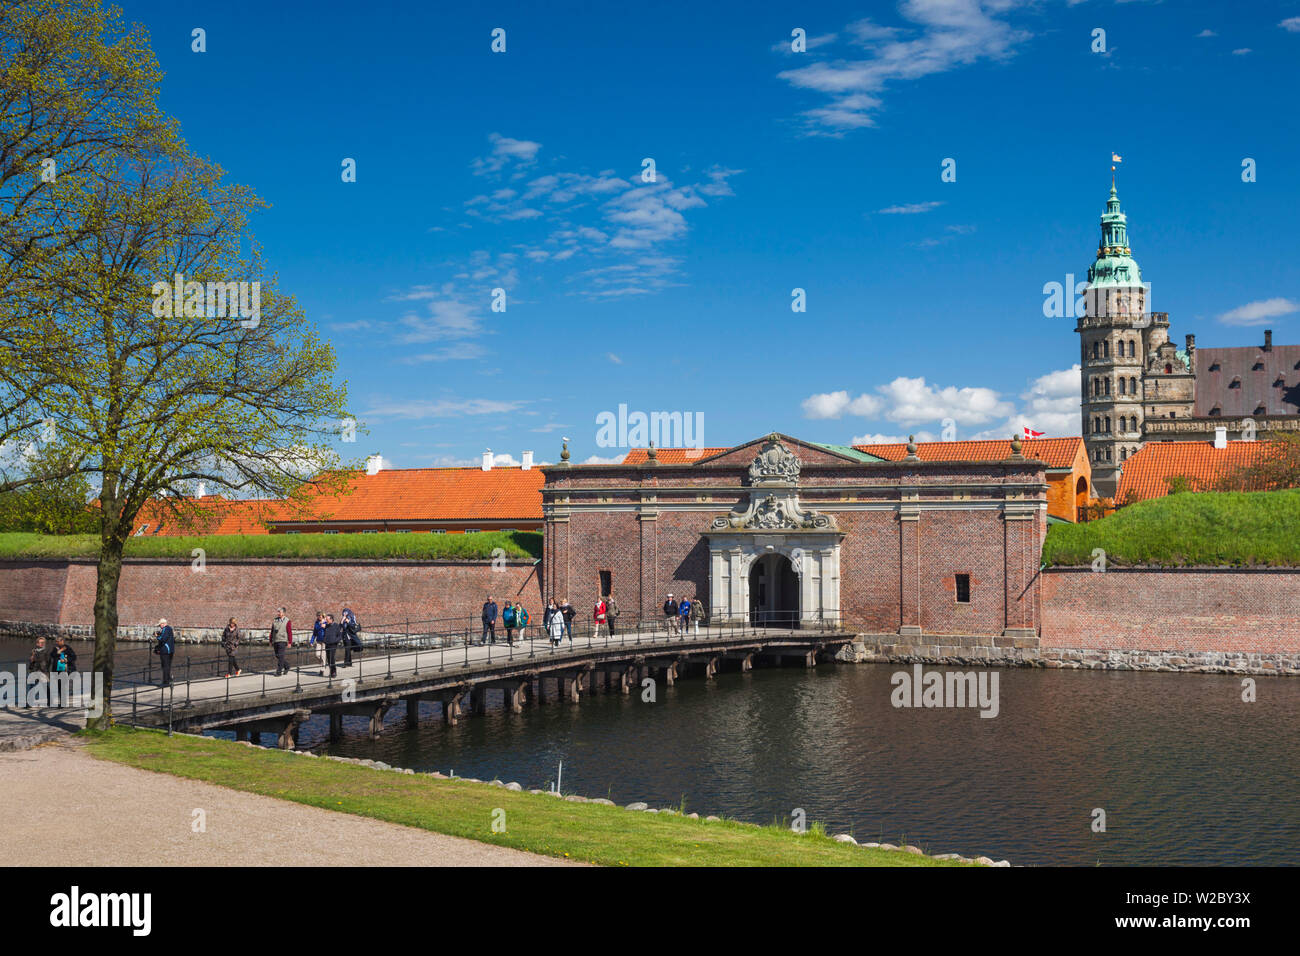 Denmark, Zealand, Helsingor, Kronborg Castle, also known as Elsinore Castle, from Shakespeare's Hamlet Stock Photo